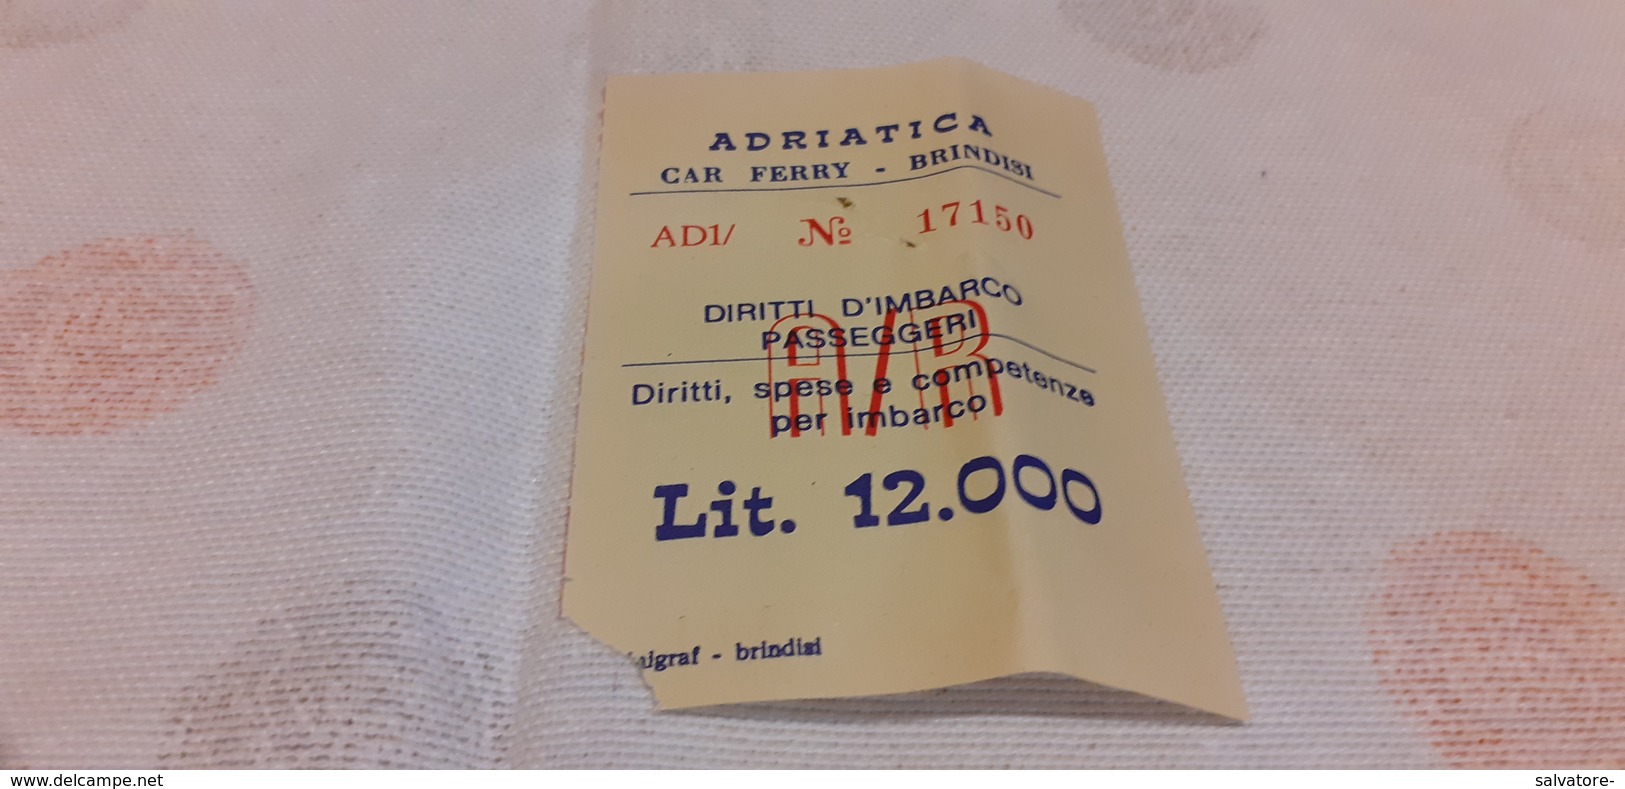 ADRIATICA  CAR FERRY - BRINDISI - DIRITTI  D'IMBARCO PASSEGGERI A/R LIRE 12.000 MILALIRE - Europa